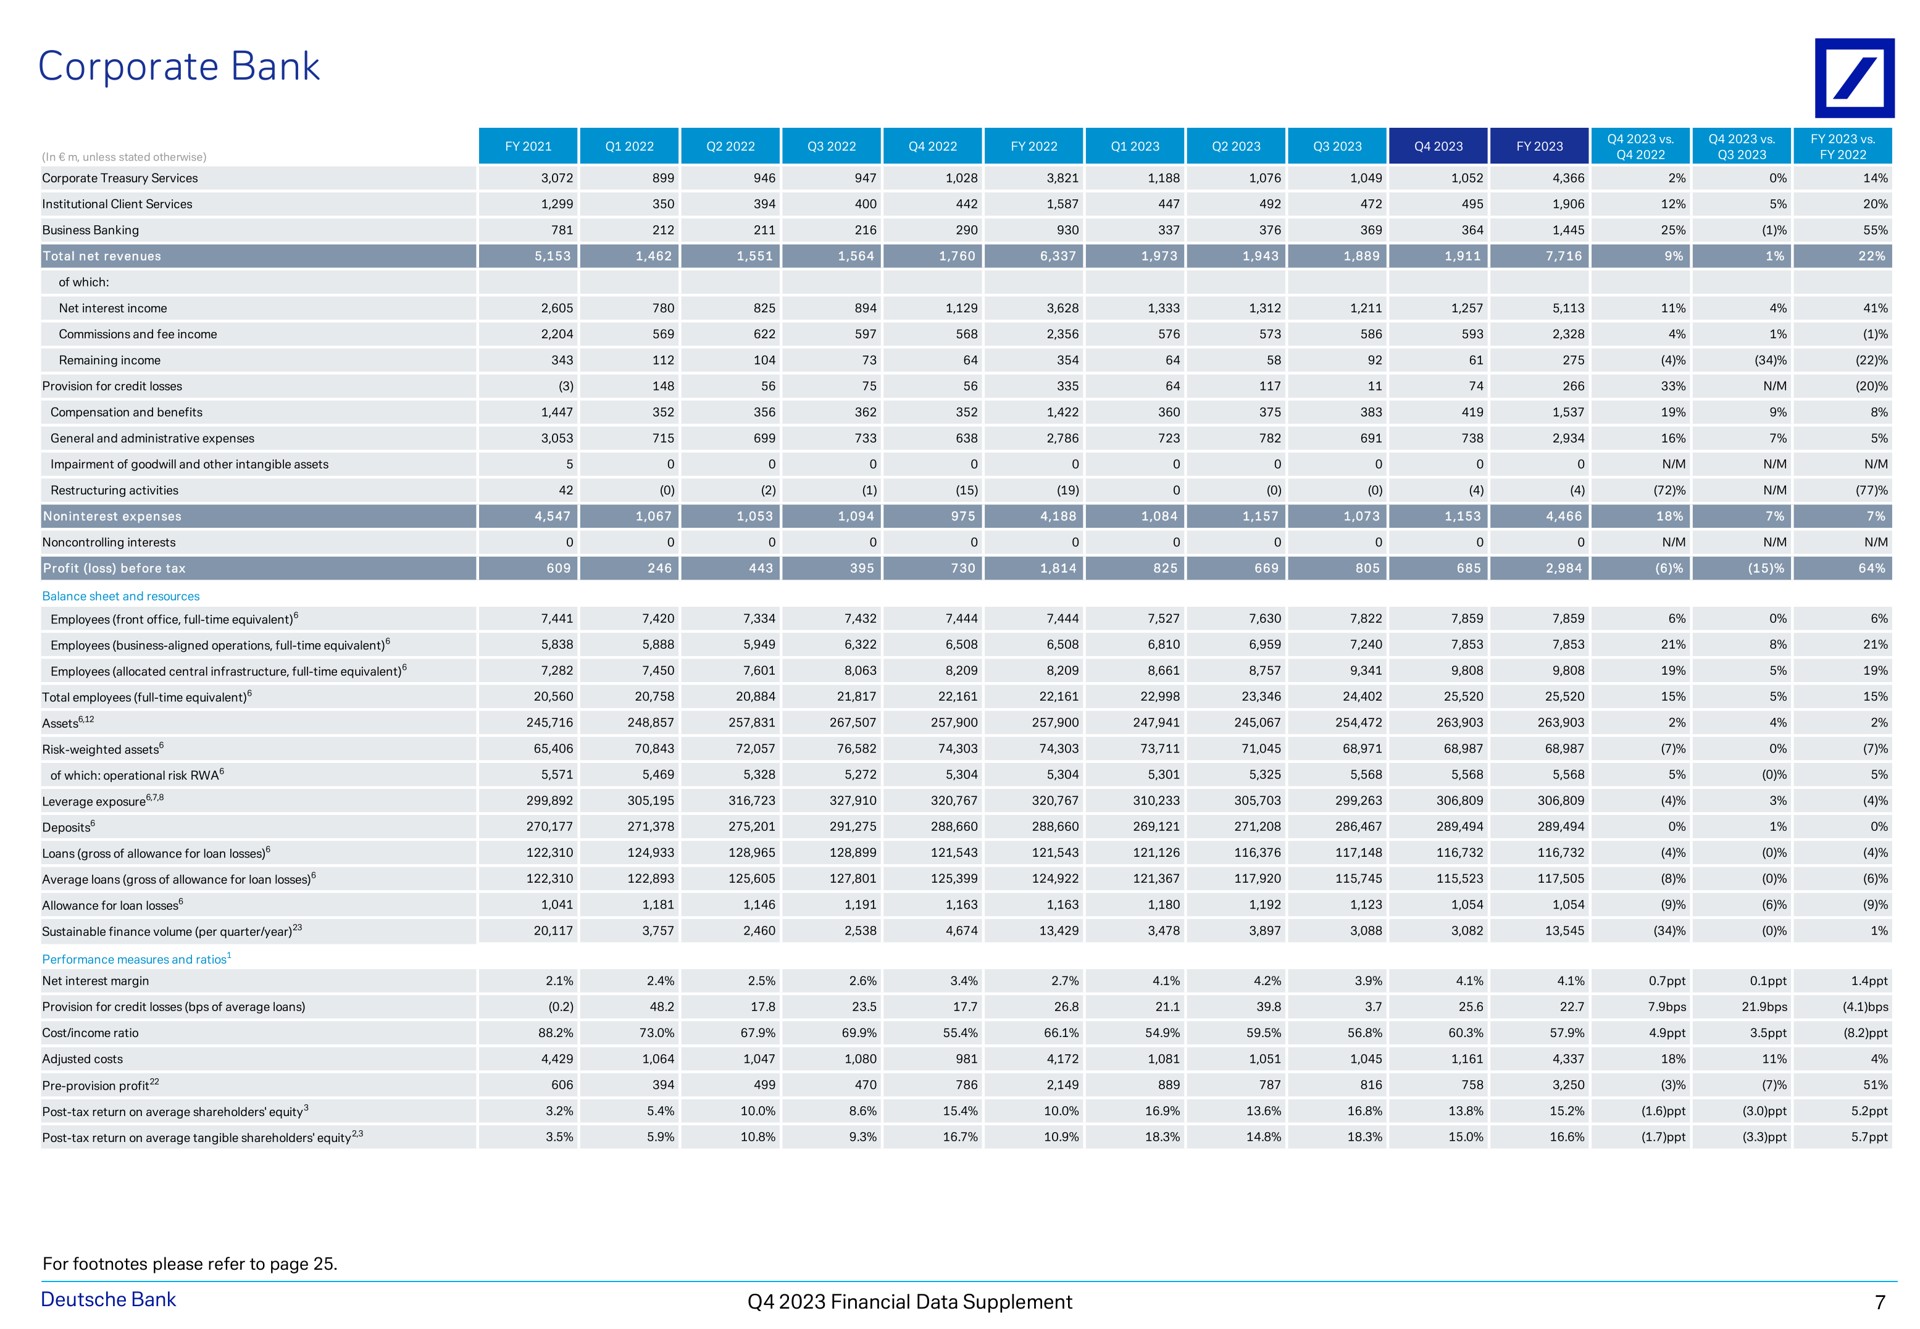 corporate bank peer aes financial data supplement | Deutsche Bank